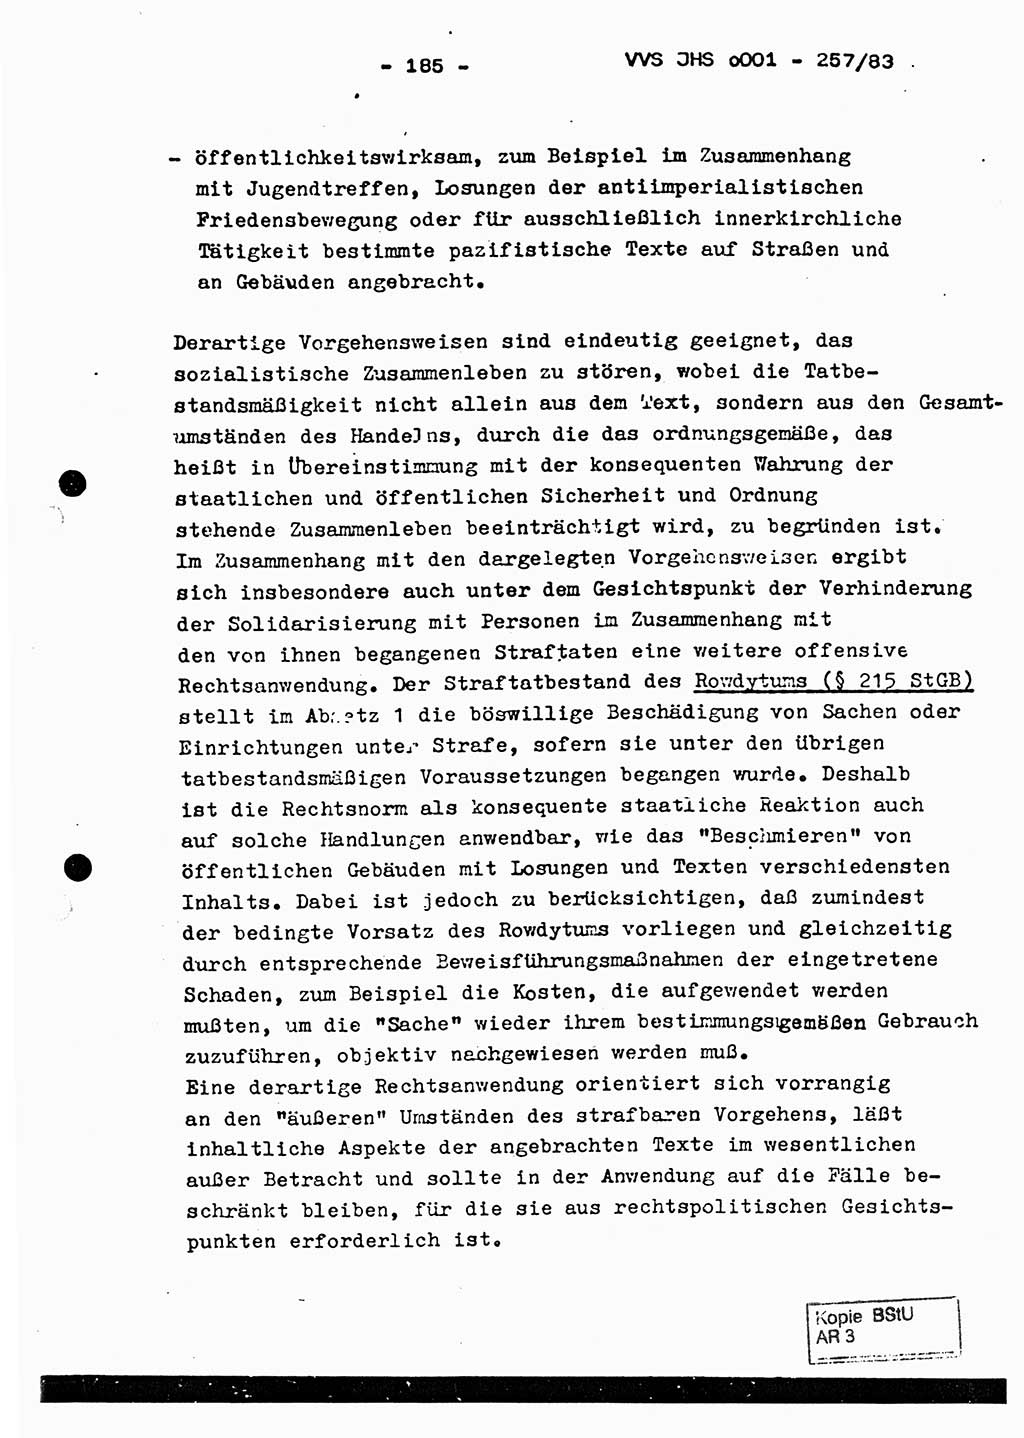 Dissertation, Oberst Helmut Lubas (BV Mdg.), Oberstleutnant Manfred Eschberger (HA IX), Oberleutnant Hans-Jürgen Ludwig (JHS), Ministerium für Staatssicherheit (MfS) [Deutsche Demokratische Republik (DDR)], Juristische Hochschule (JHS), Vertrauliche Verschlußsache (VVS) o001-257/83, Potsdam 1983, Seite 185 (Diss. MfS DDR JHS VVS o001-257/83 1983, S. 185)